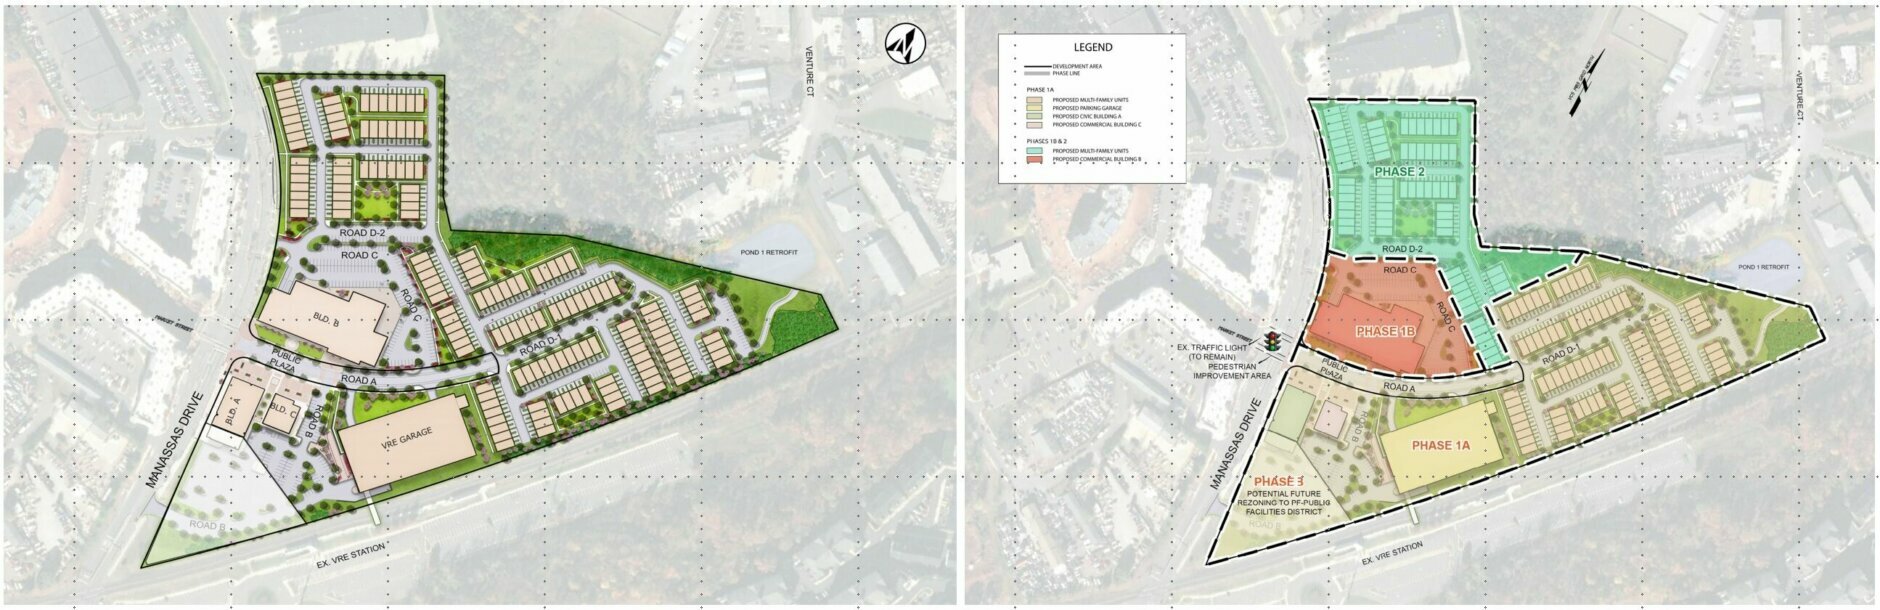 Village at Manassas Park site plans